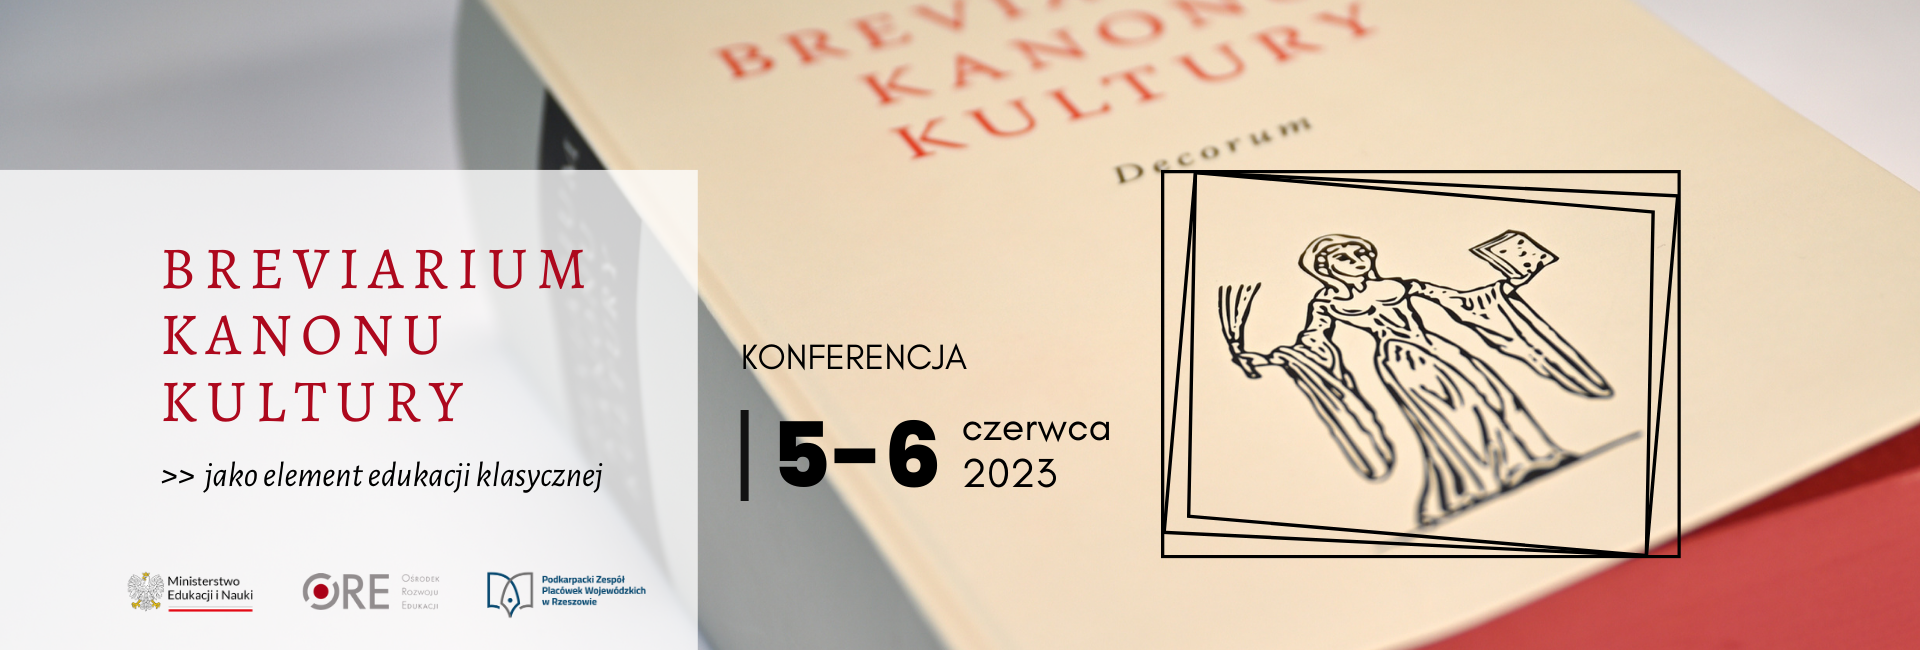 Breviarium kanonu kultury - jako element edukacji klasycznej - konferencja 5-6 czerwca 2023